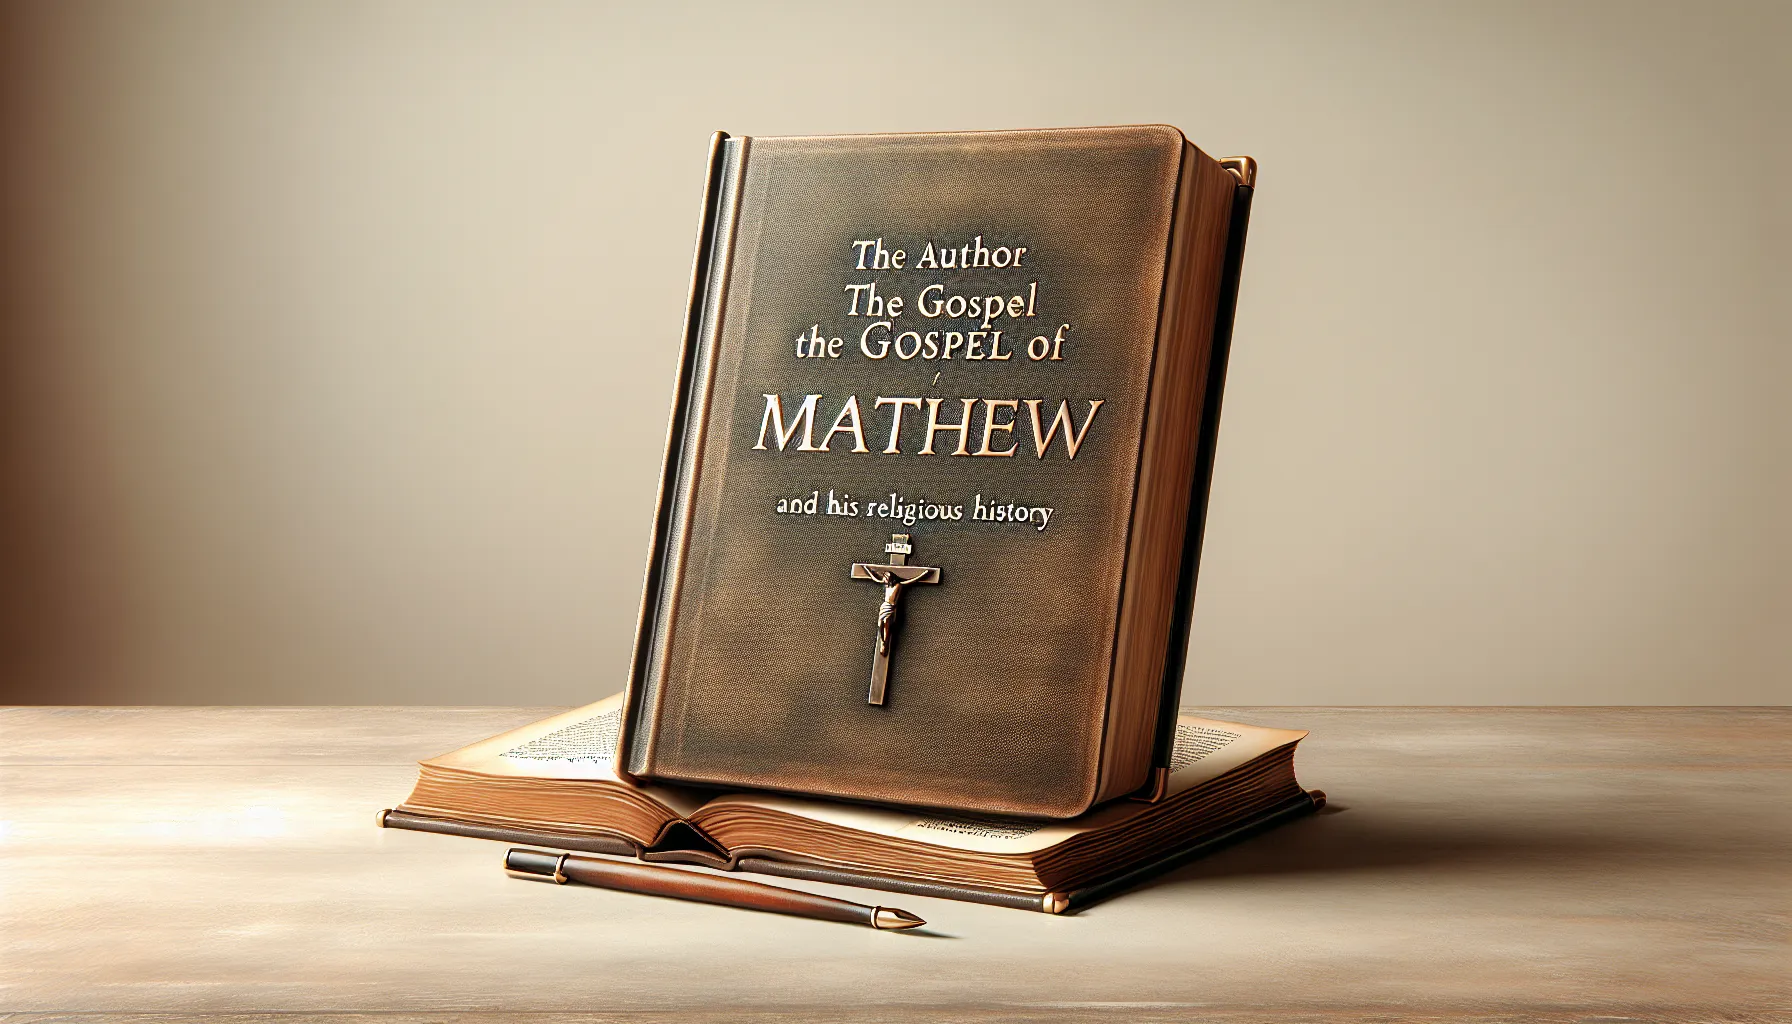 Imagen del Evangelio de Mateo con fondo neutro y título del artículo superpuesto: El autor del Evangelio de Mateo y su importancia en la historia de la religión.